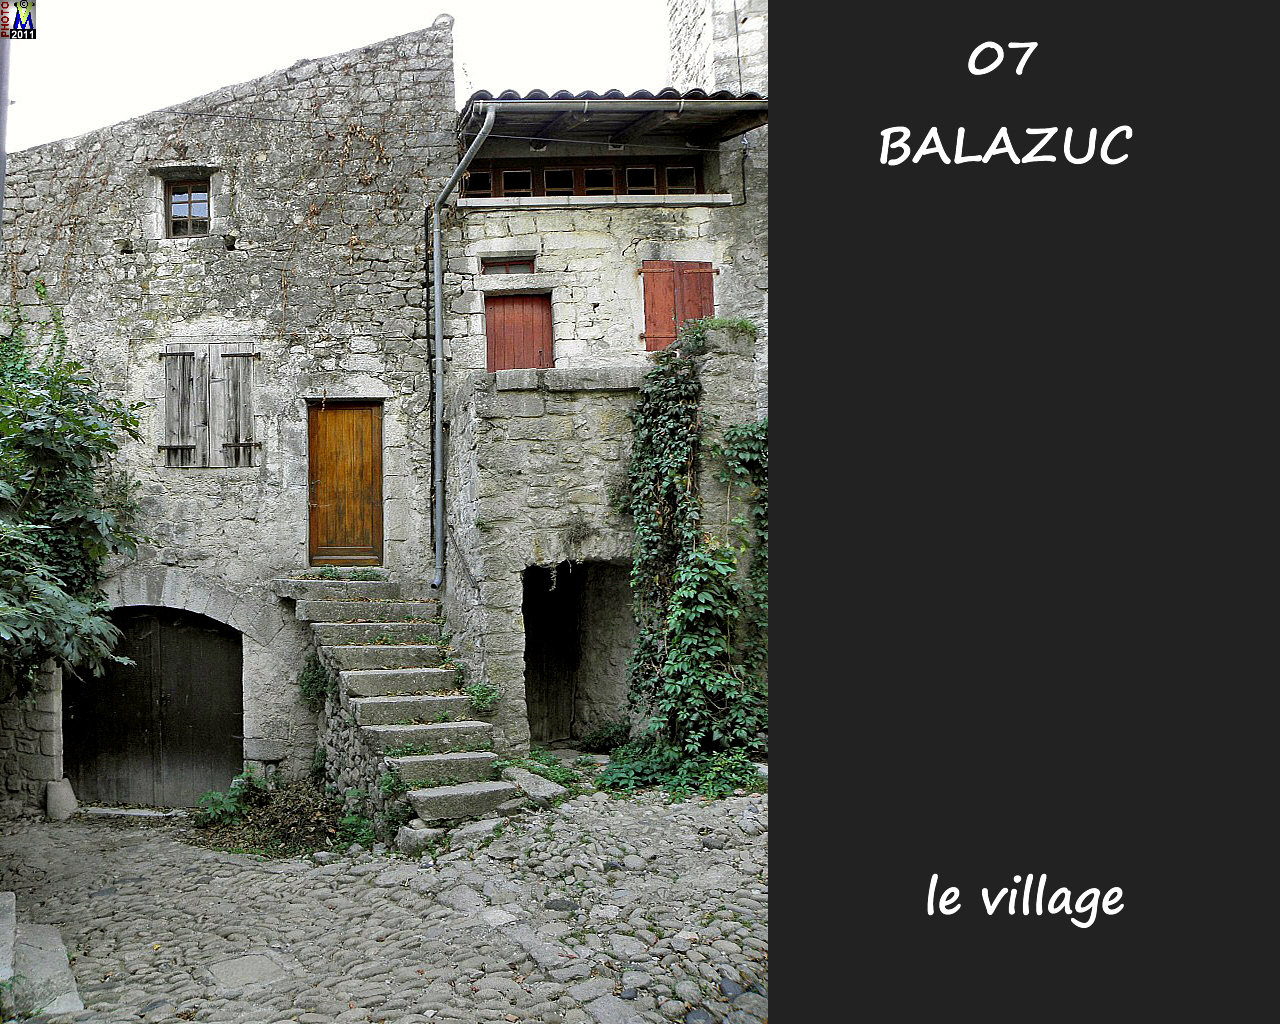 07BALAZUC_village_134.jpg